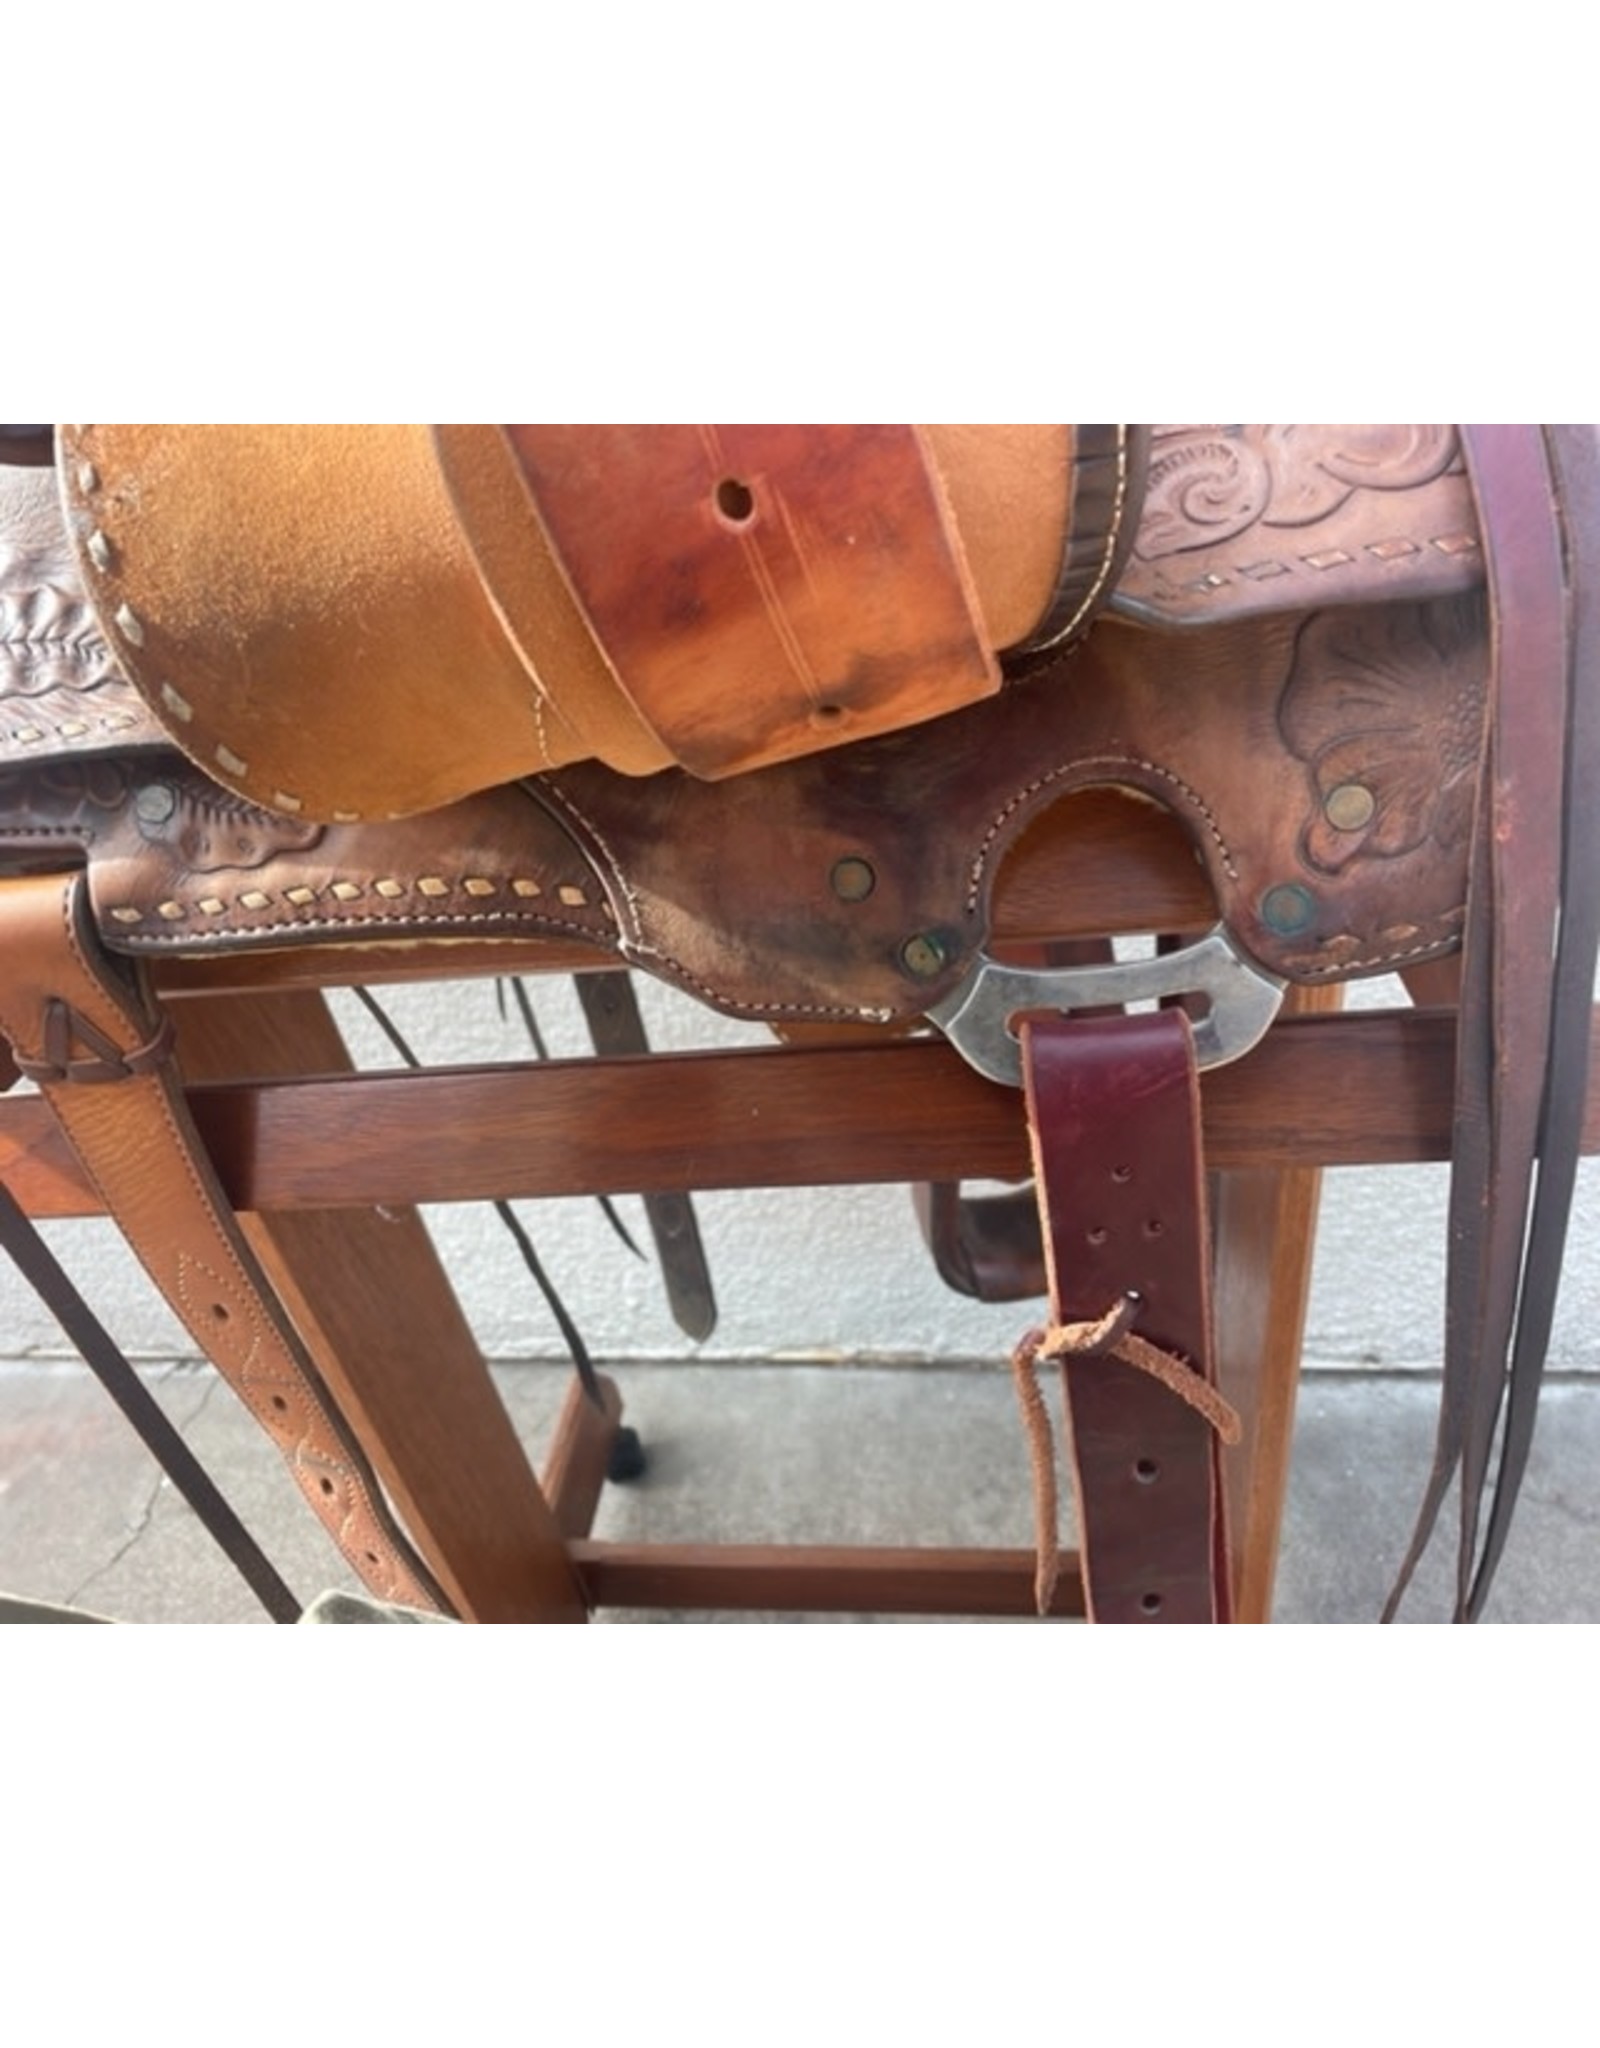 15.5" Eamor Western Saddle Full Quarter Bars